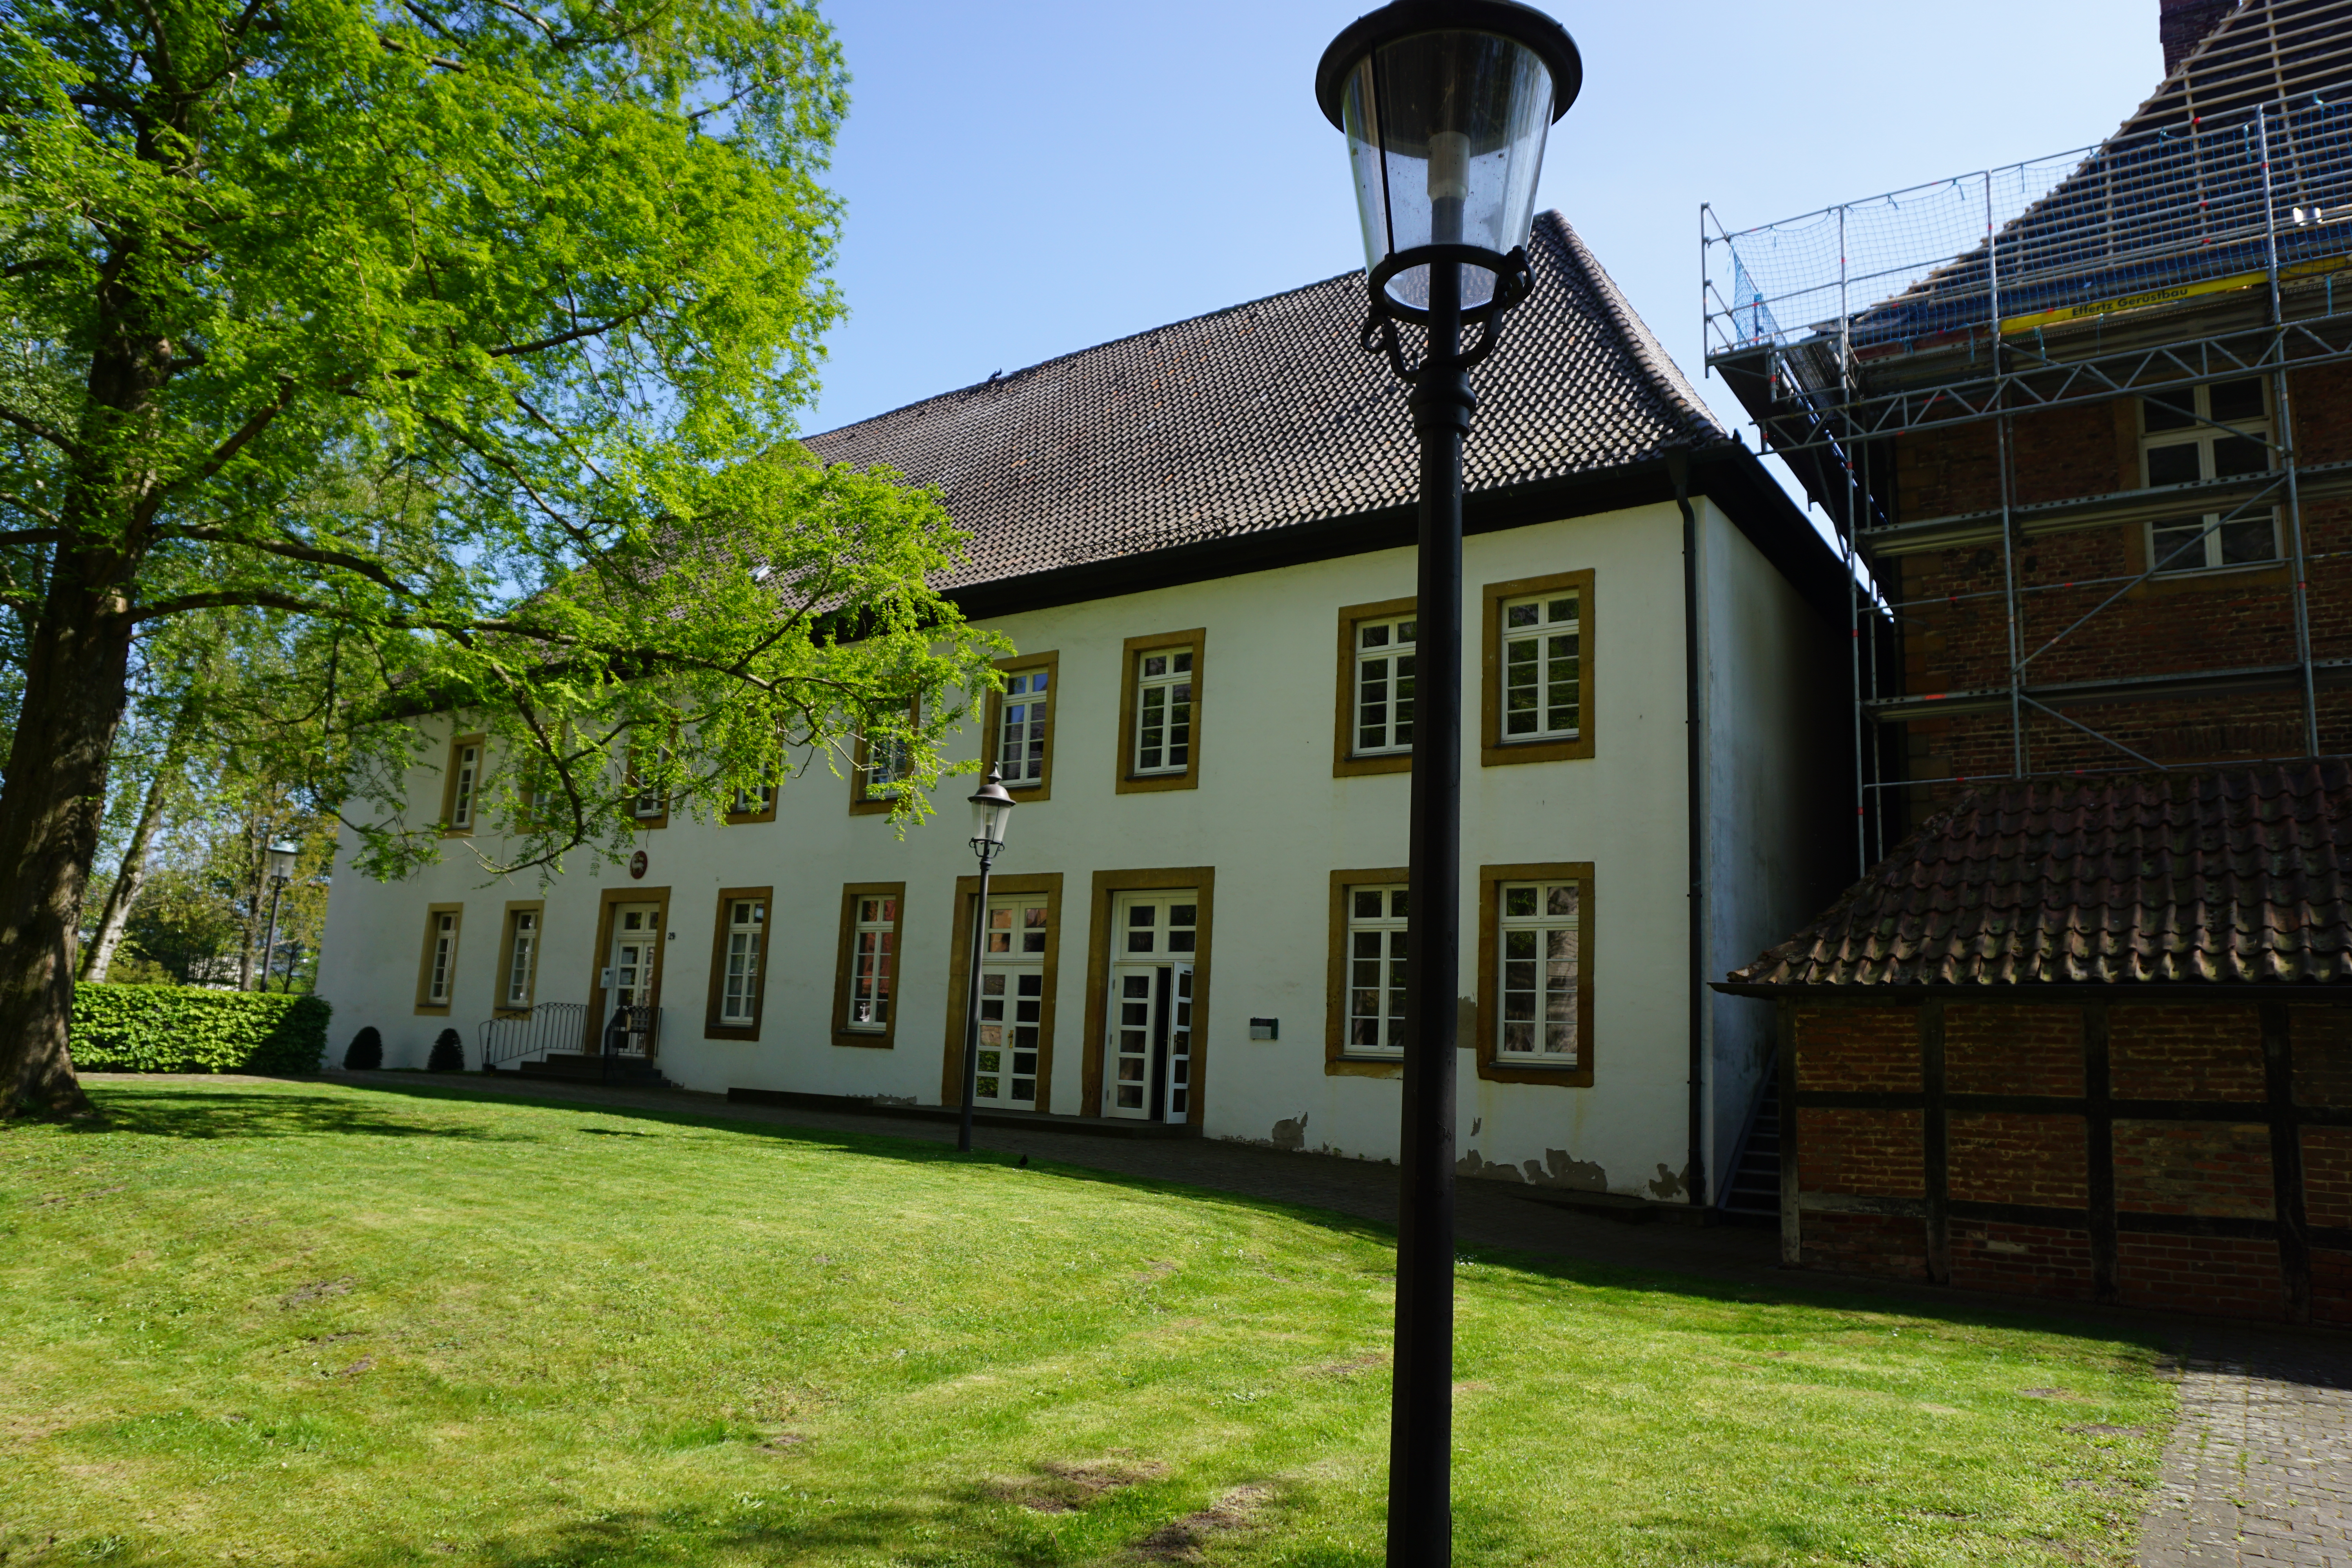 Konventhaus der ehemaligen Klosteranlage Clarholz, Herzebrock-Clarholz.
